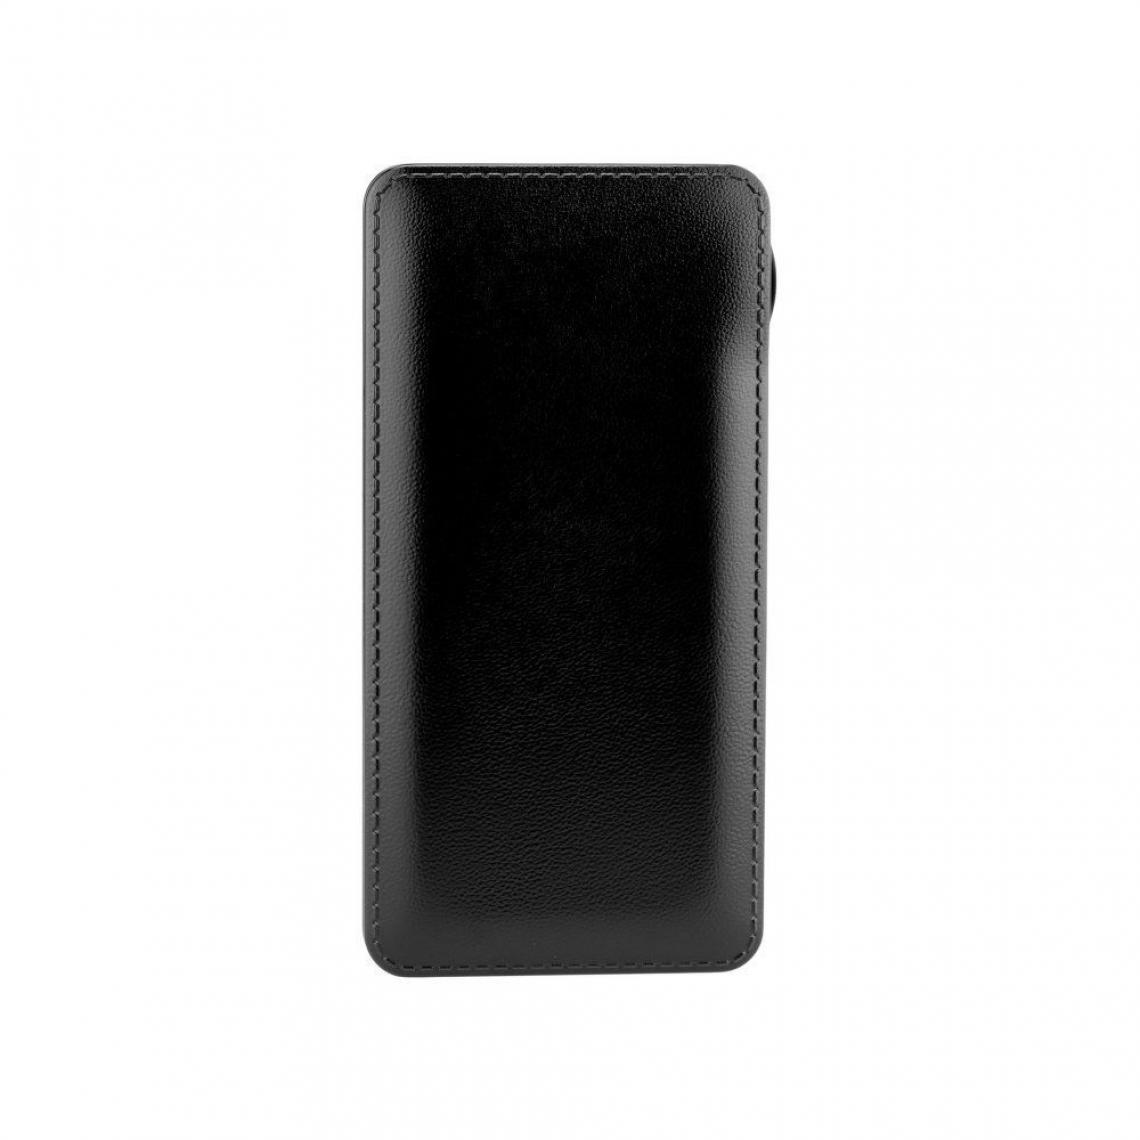 Ozzzo - Chargeur batterie externe 30000 mAh powerbank ozzzo noir pour SAMSUNG N9005 Galaxy Note 3 - Autres accessoires smartphone